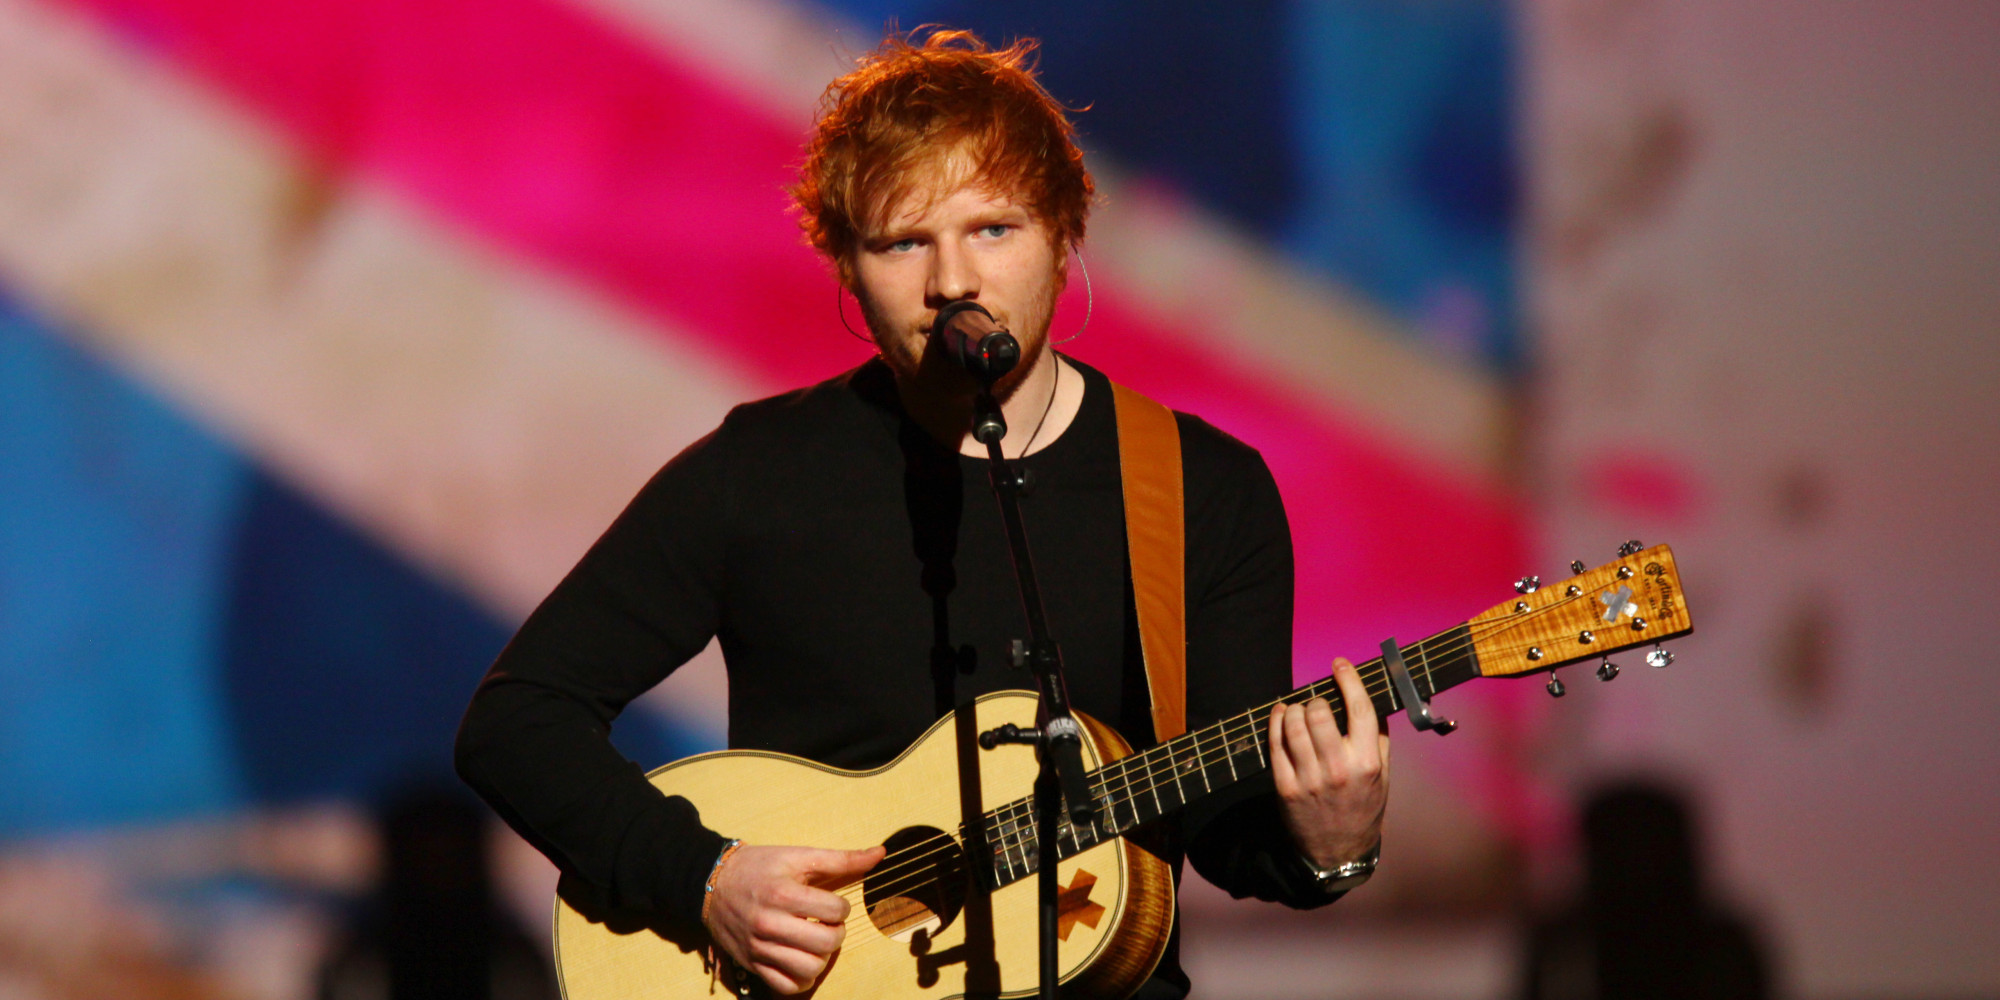 Ed Sheeran apela a la memoria con el lyric video de “Perfect”. Cusica Plus.